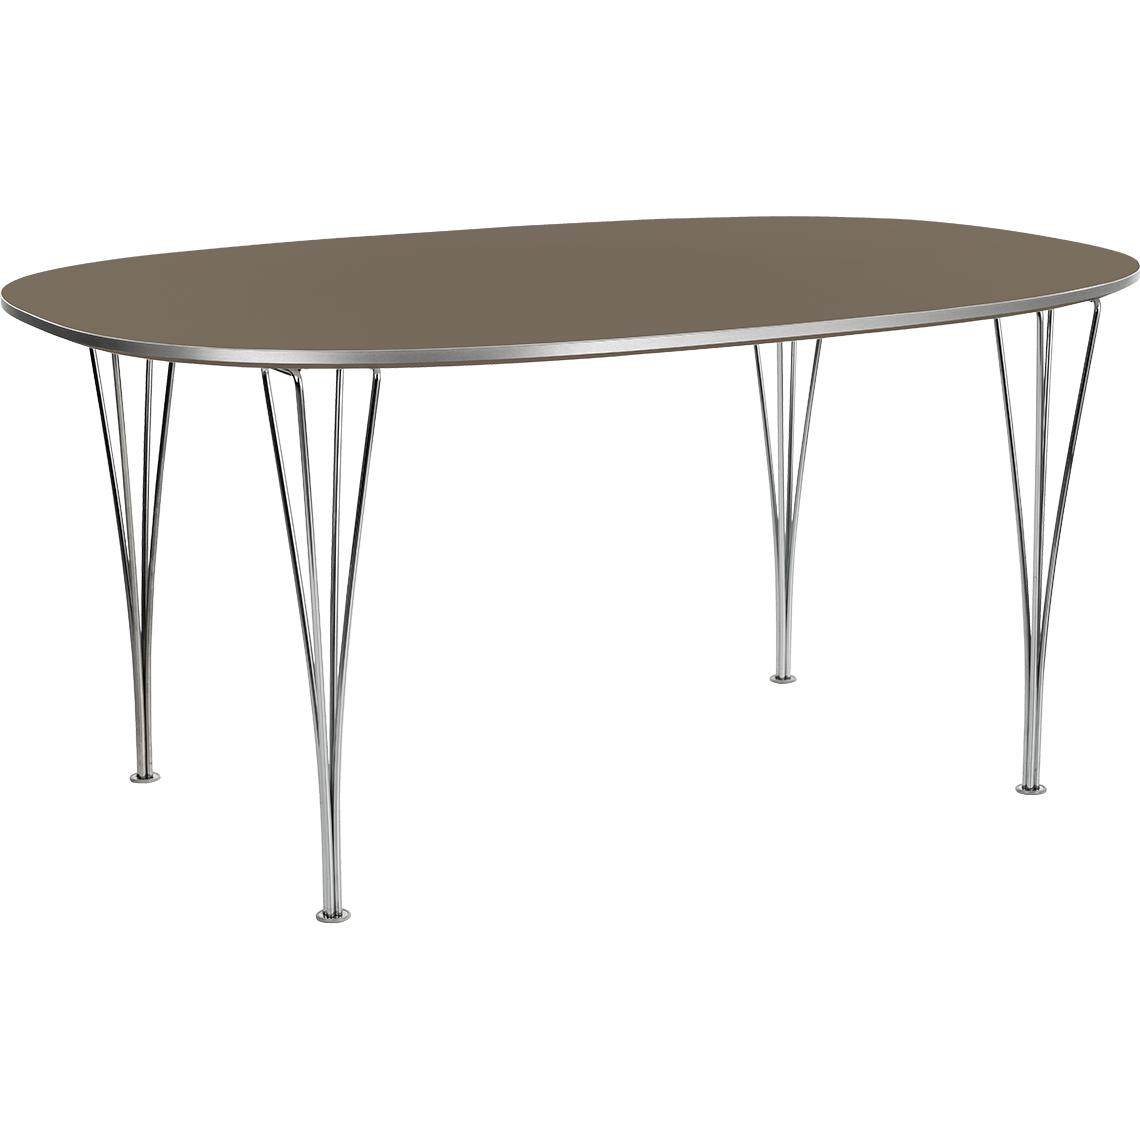 Fritz Hansen Super Ellipse Table 120 X180 Cm, Brown Ottawa Laminate